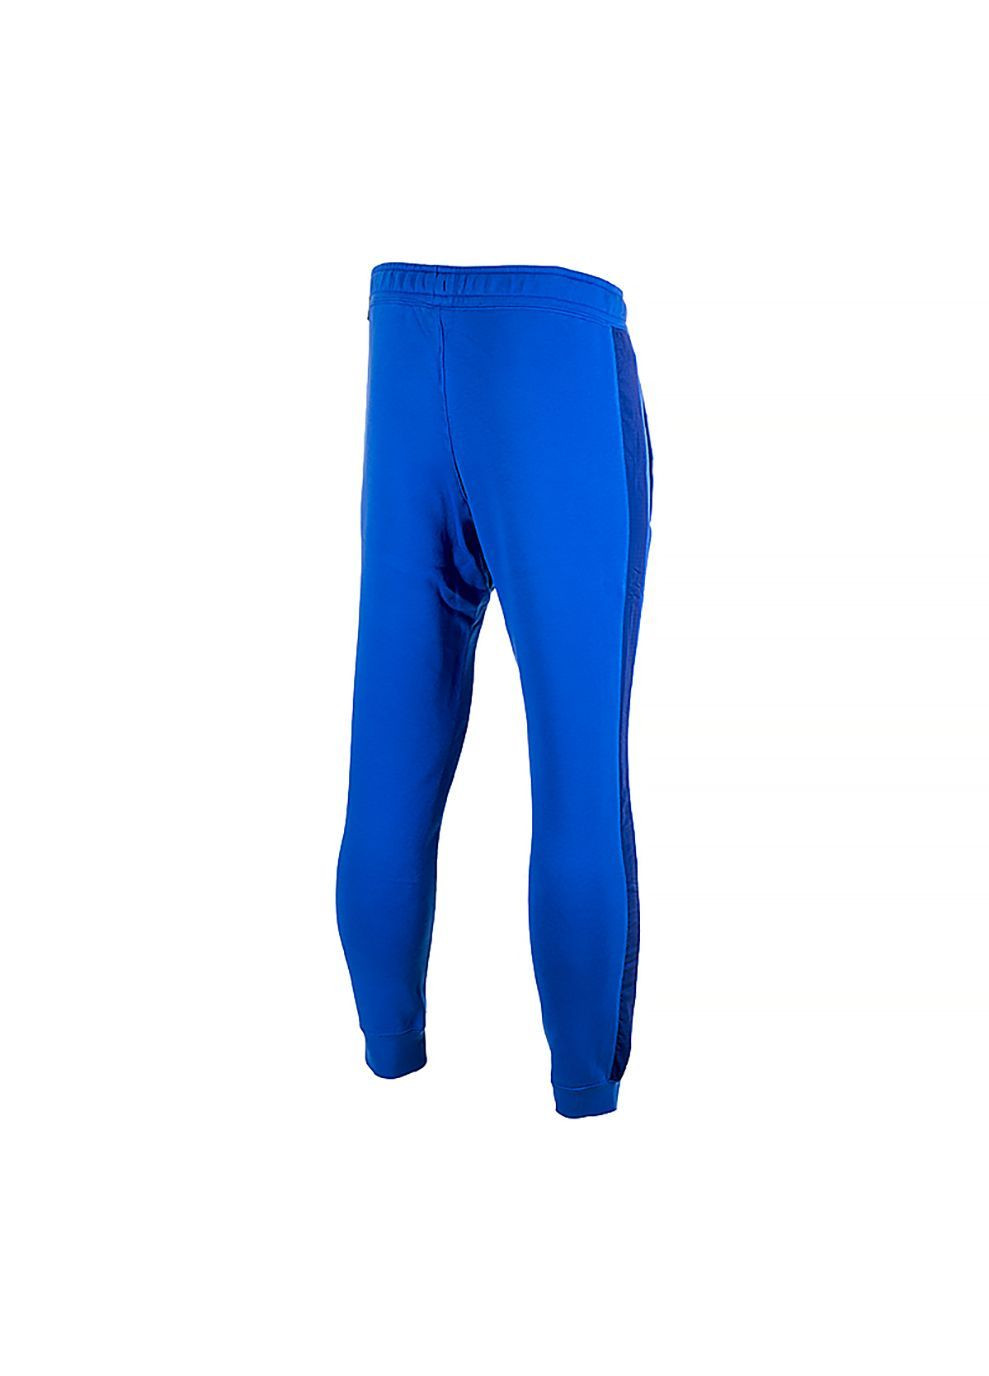 Синие спортивные демисезонные брюки Nike